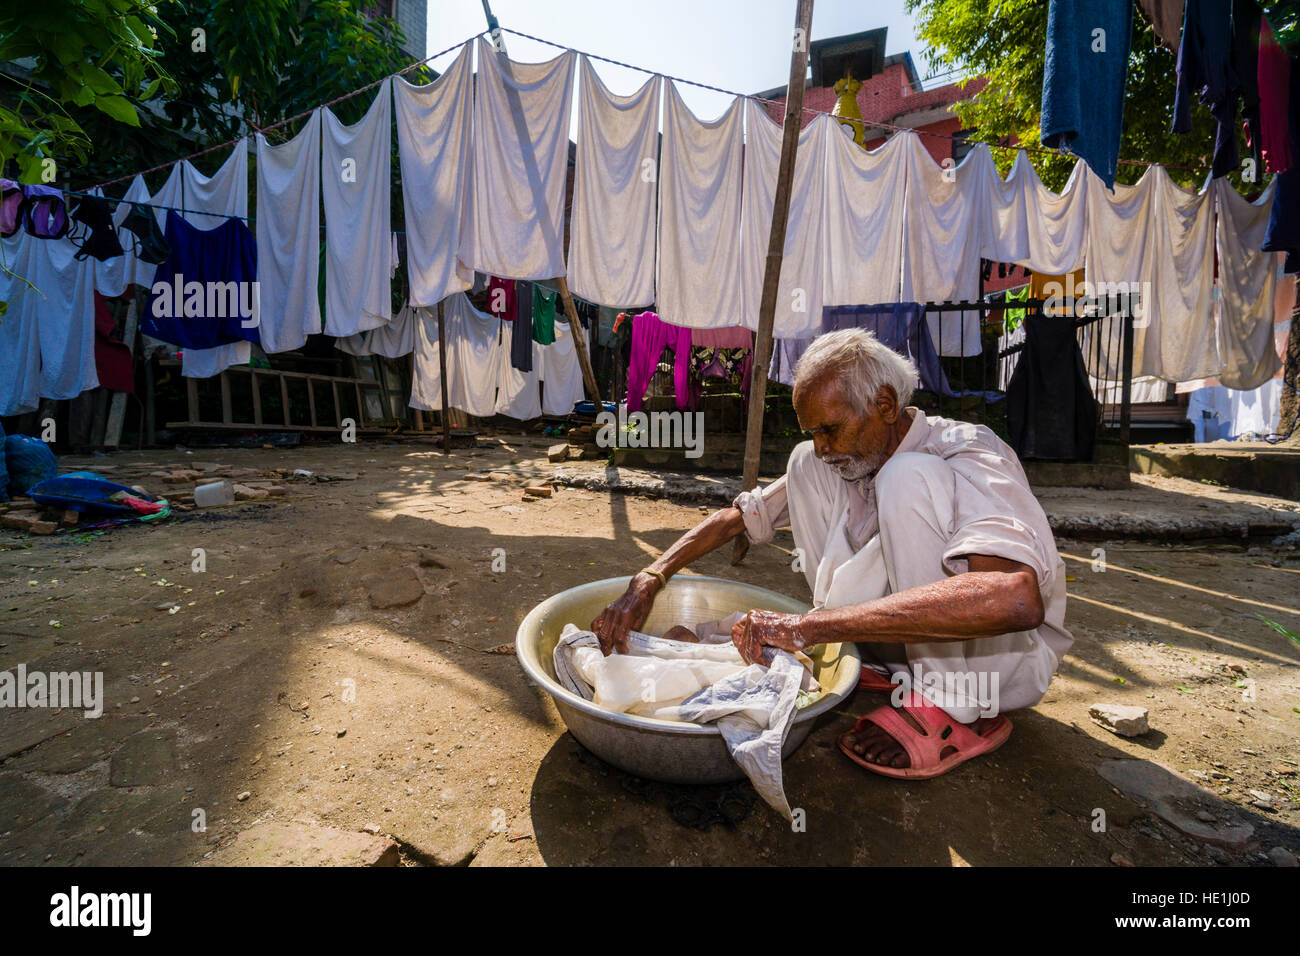 Un uomo sta facendo servizio lavanderia a mano in un cortile Foto Stock